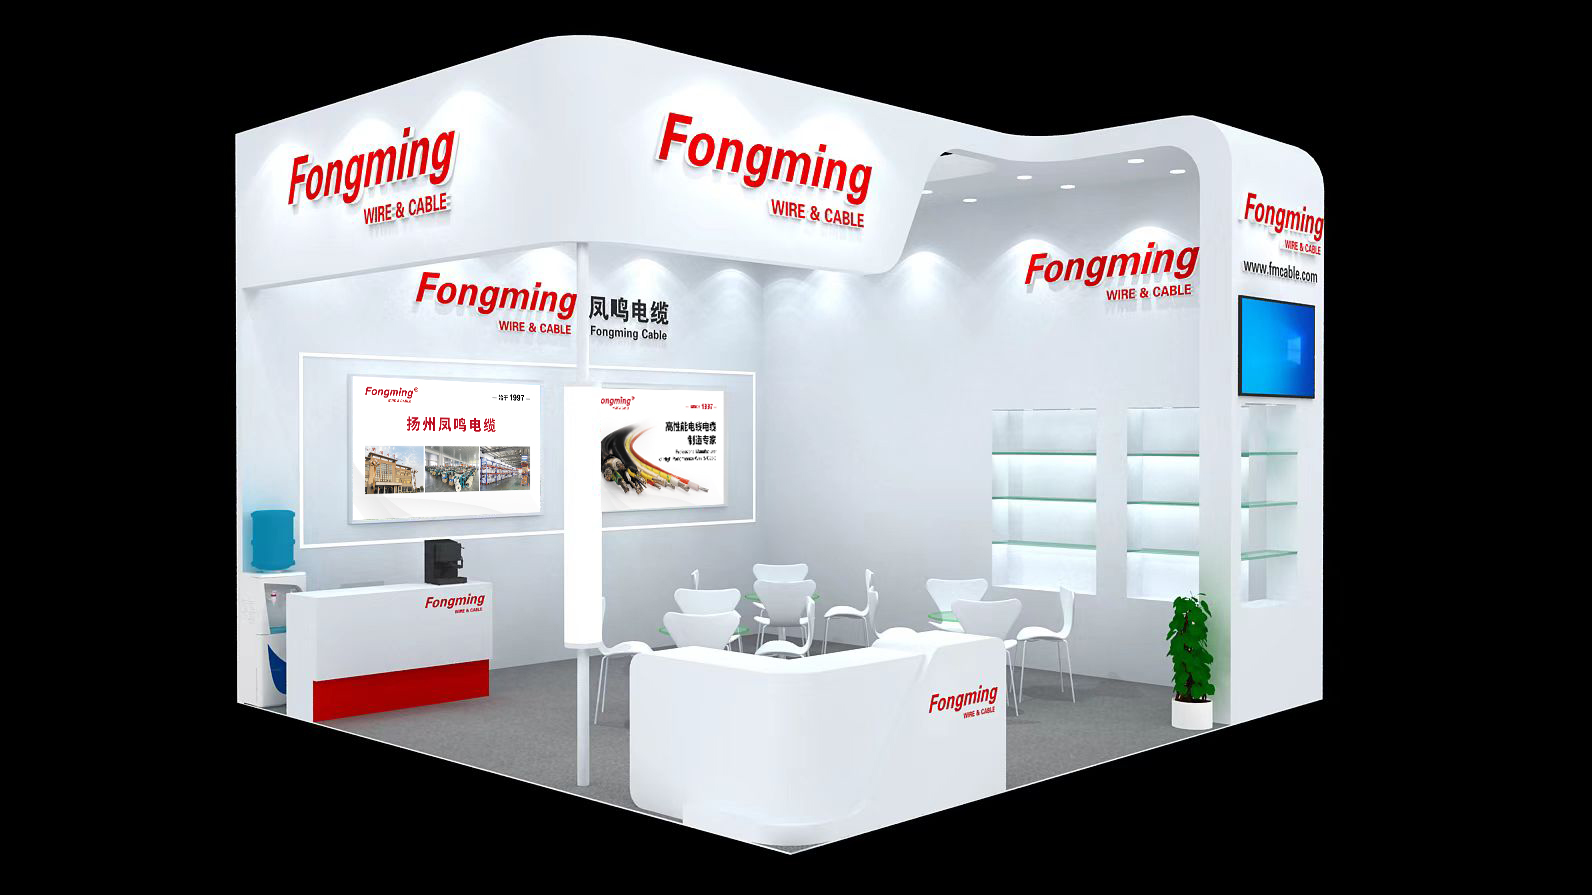 Fongming Cable 丨electronica China está a punto de comenzar, Fongming Cable lo invita sinceramente a visitar